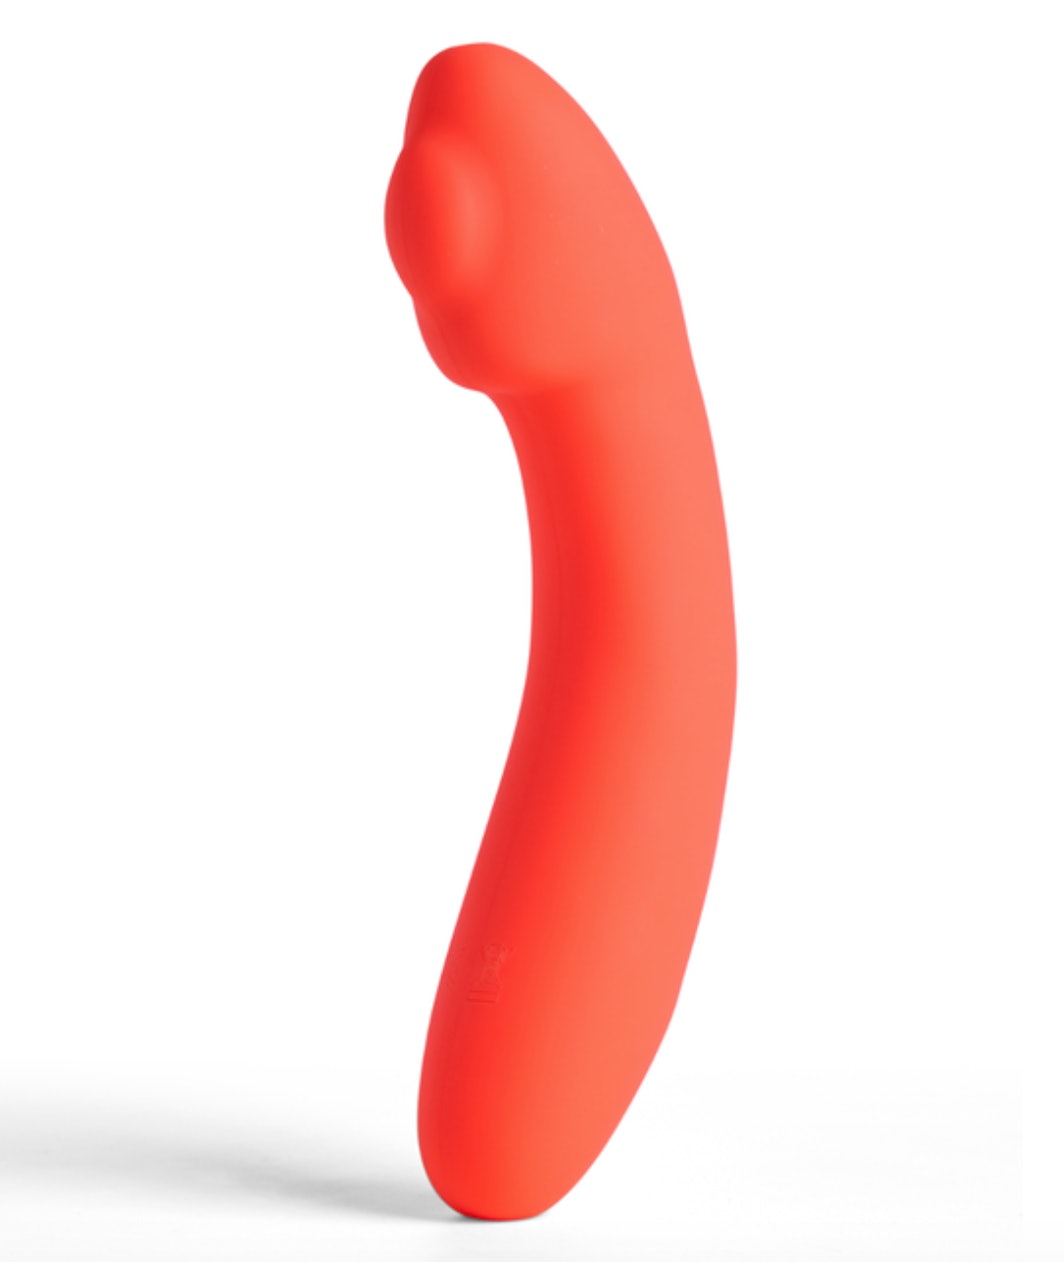 Falls Sie nicht wussten, dass es beheizte Sexspielzeuge gibt